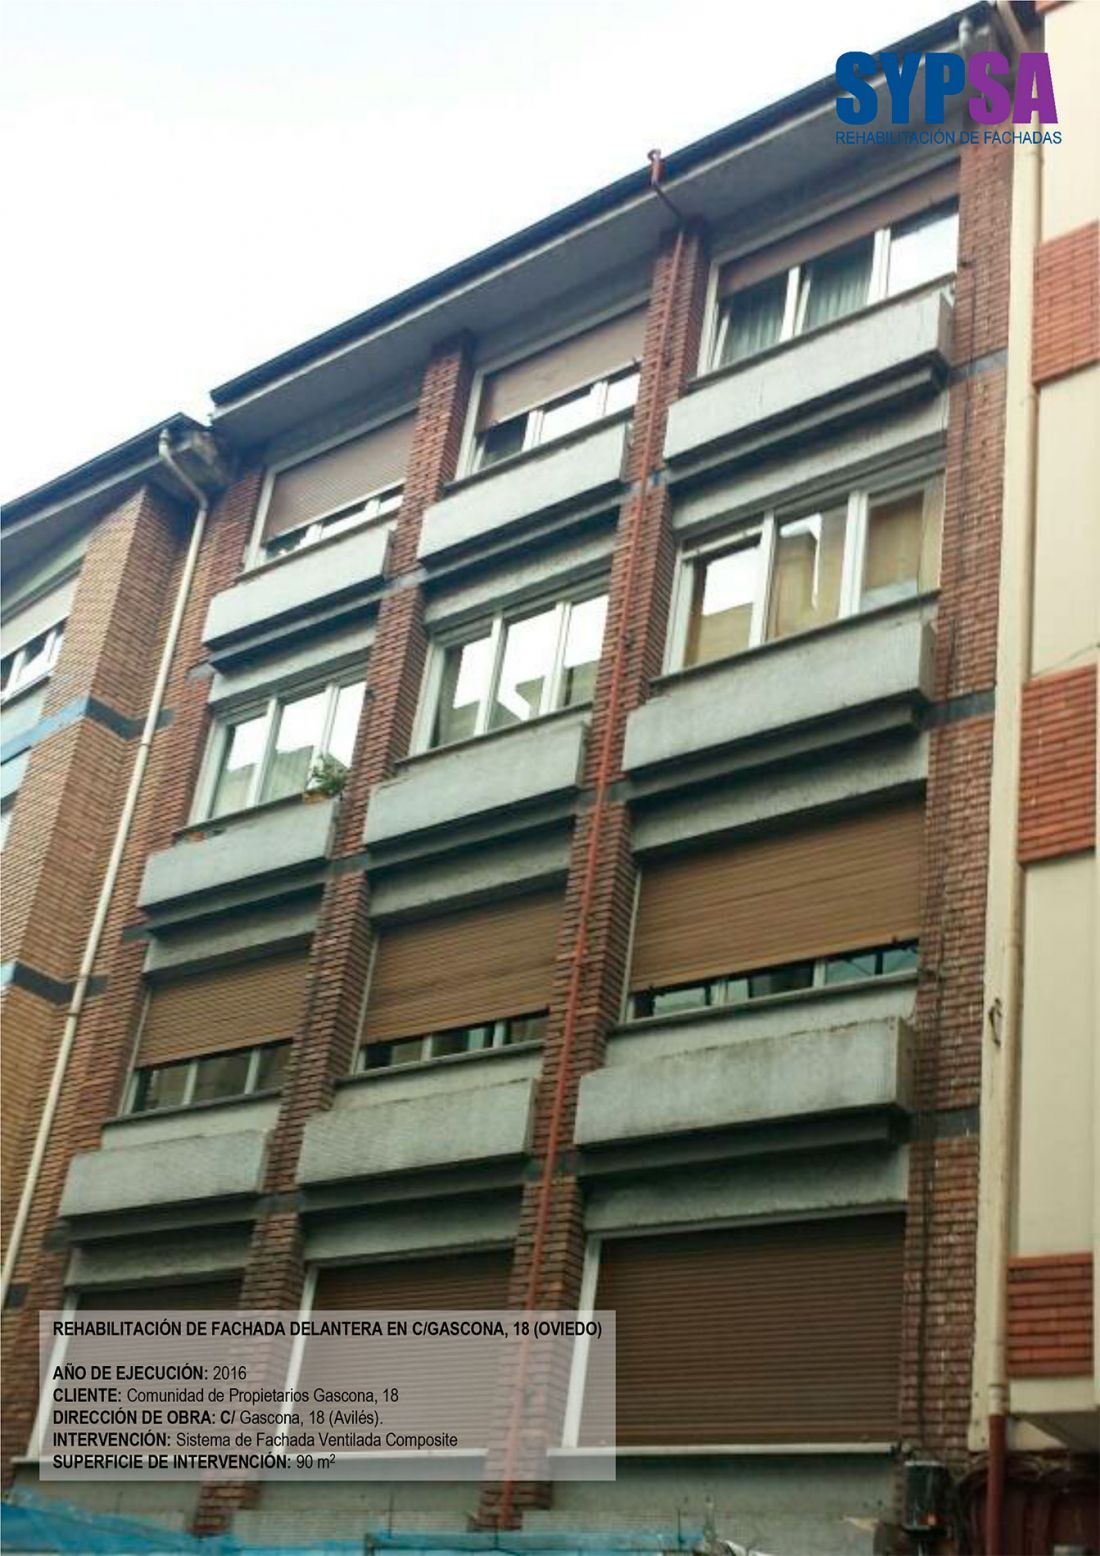 Rehabilitación de fachada delantera en C/Gascona, 18 (Oviedo)   Antes